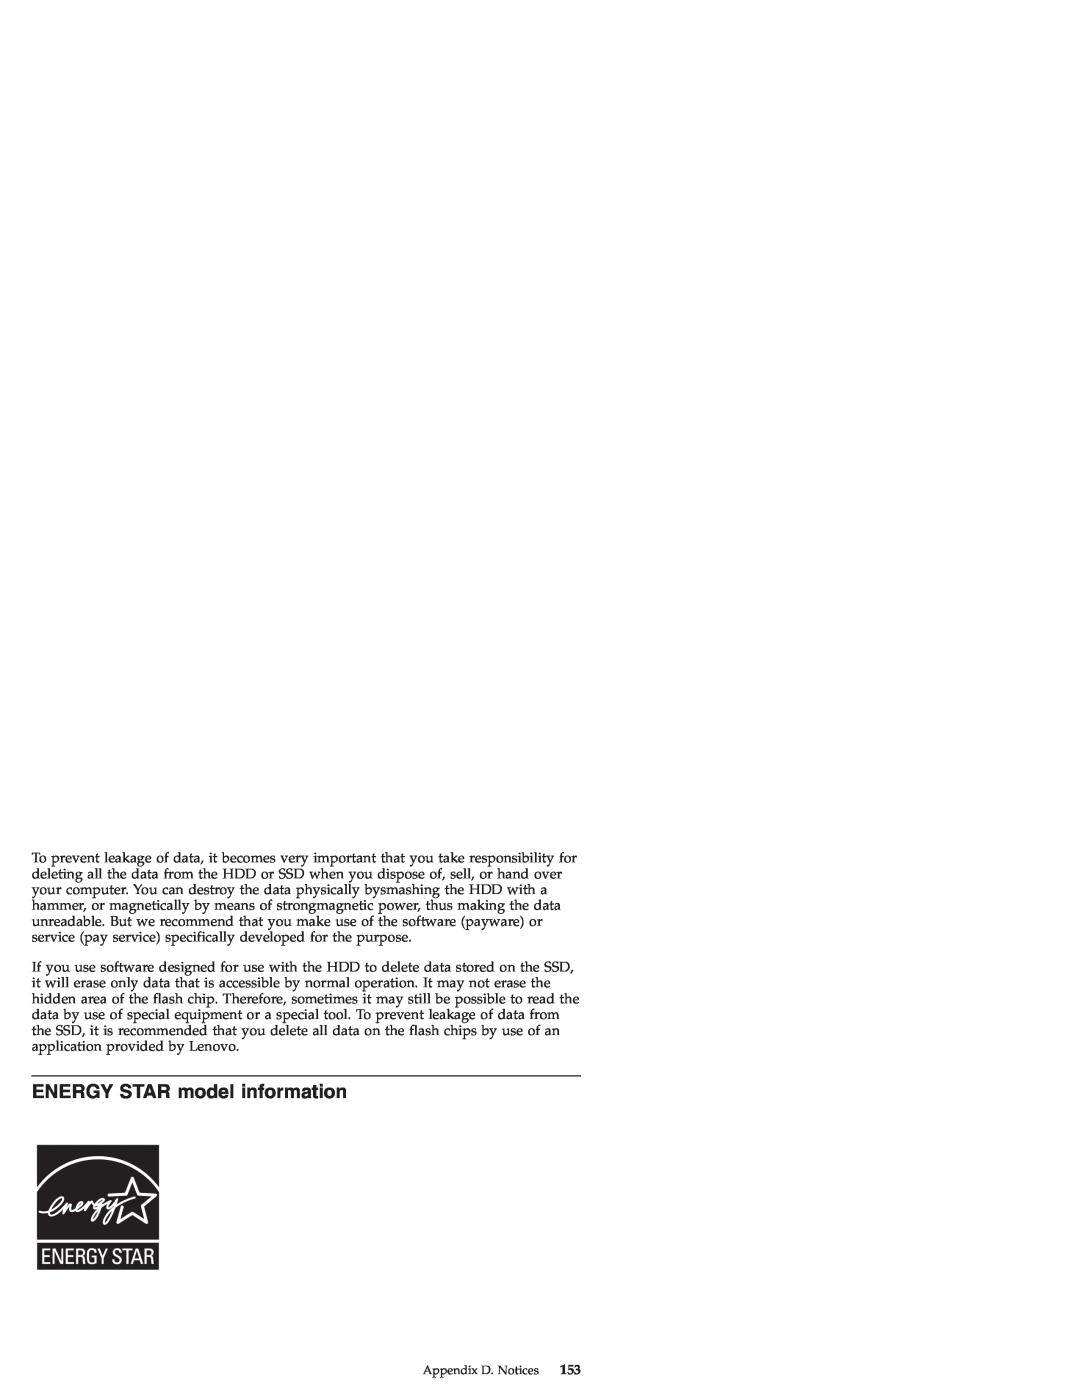 Lenovo S9E, S10E manual ENERGY STAR model information 